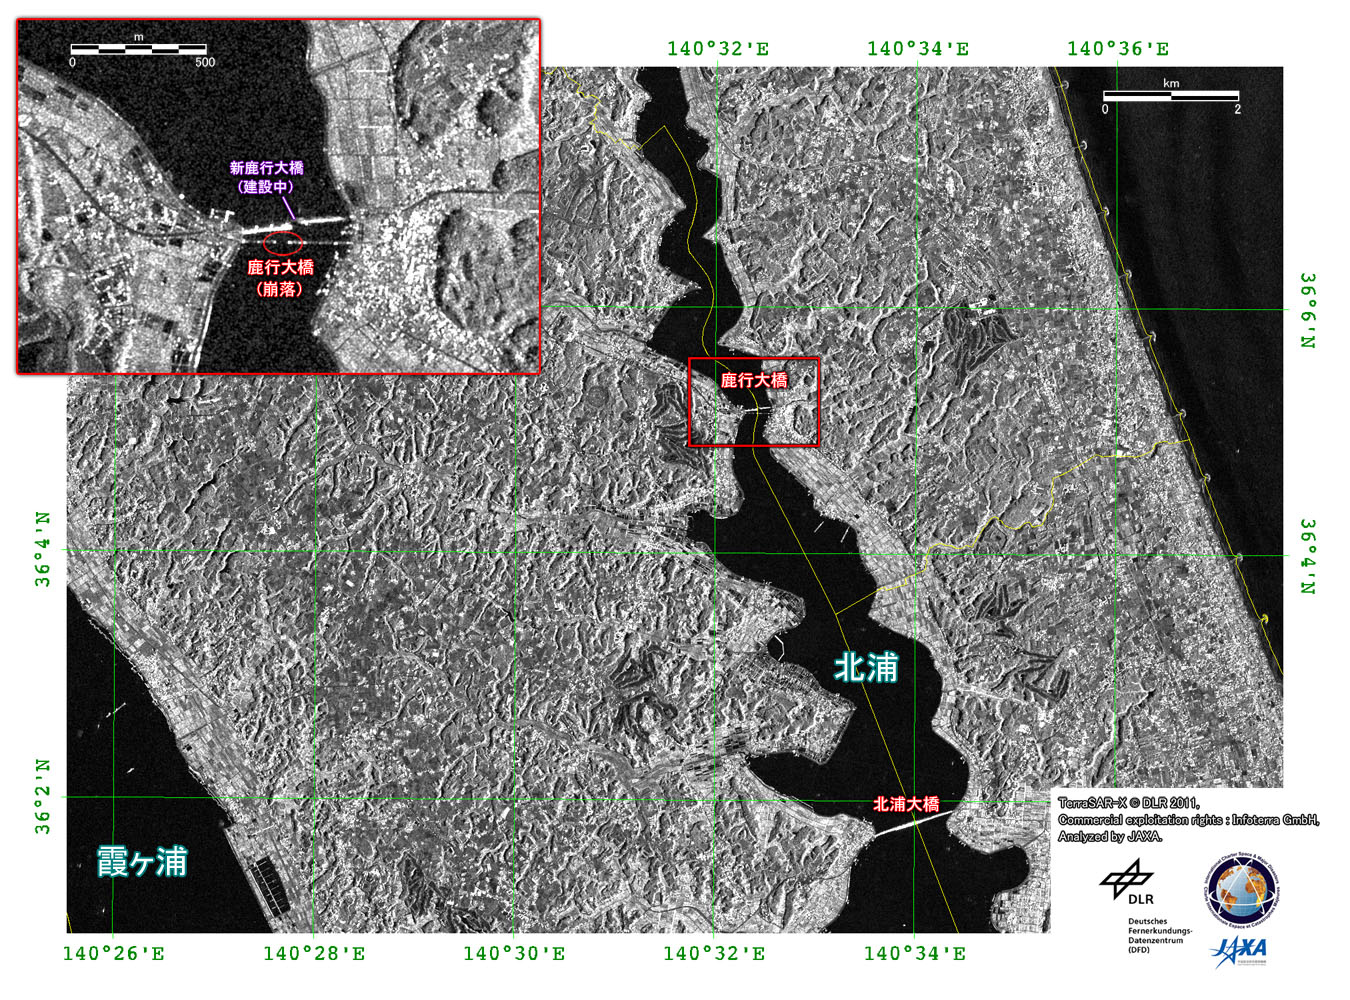 図5: TerraSAR-Xの茨城県東部の災害後画像 (2011年3月13日観測)